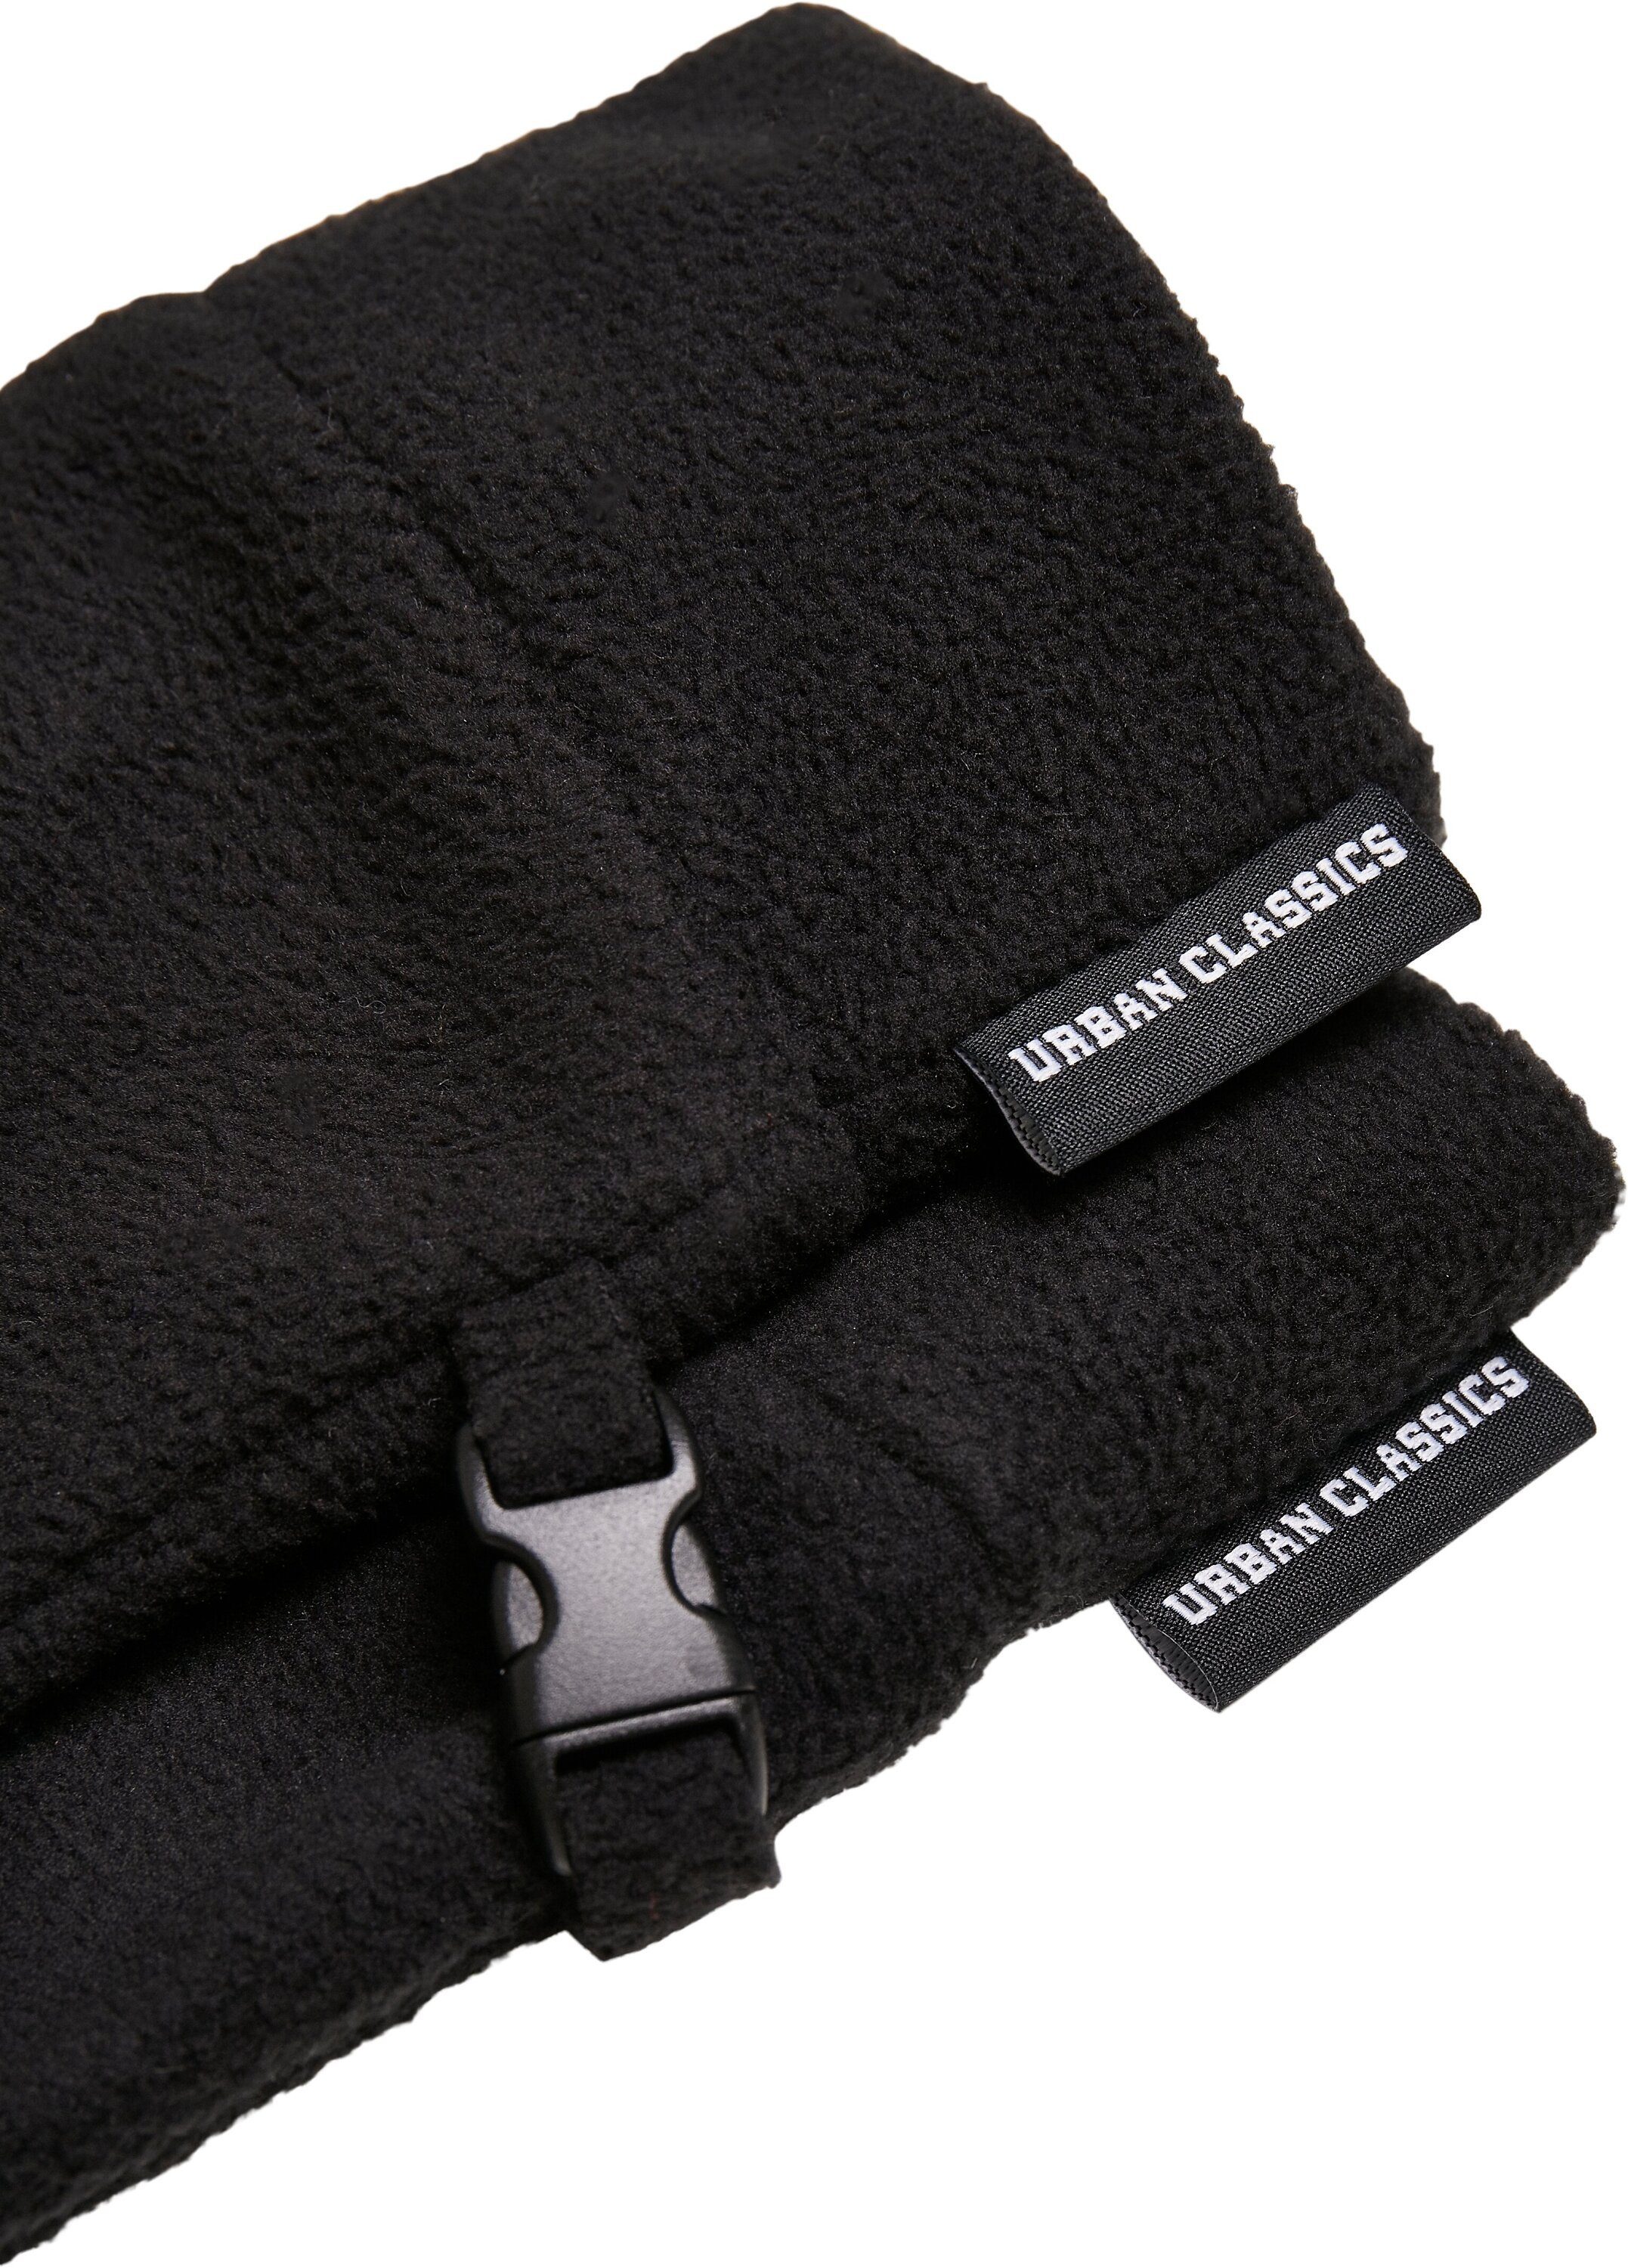 Baumwollhandschuhe URBAN Accessoires CLASSICS Winter Set Fleece